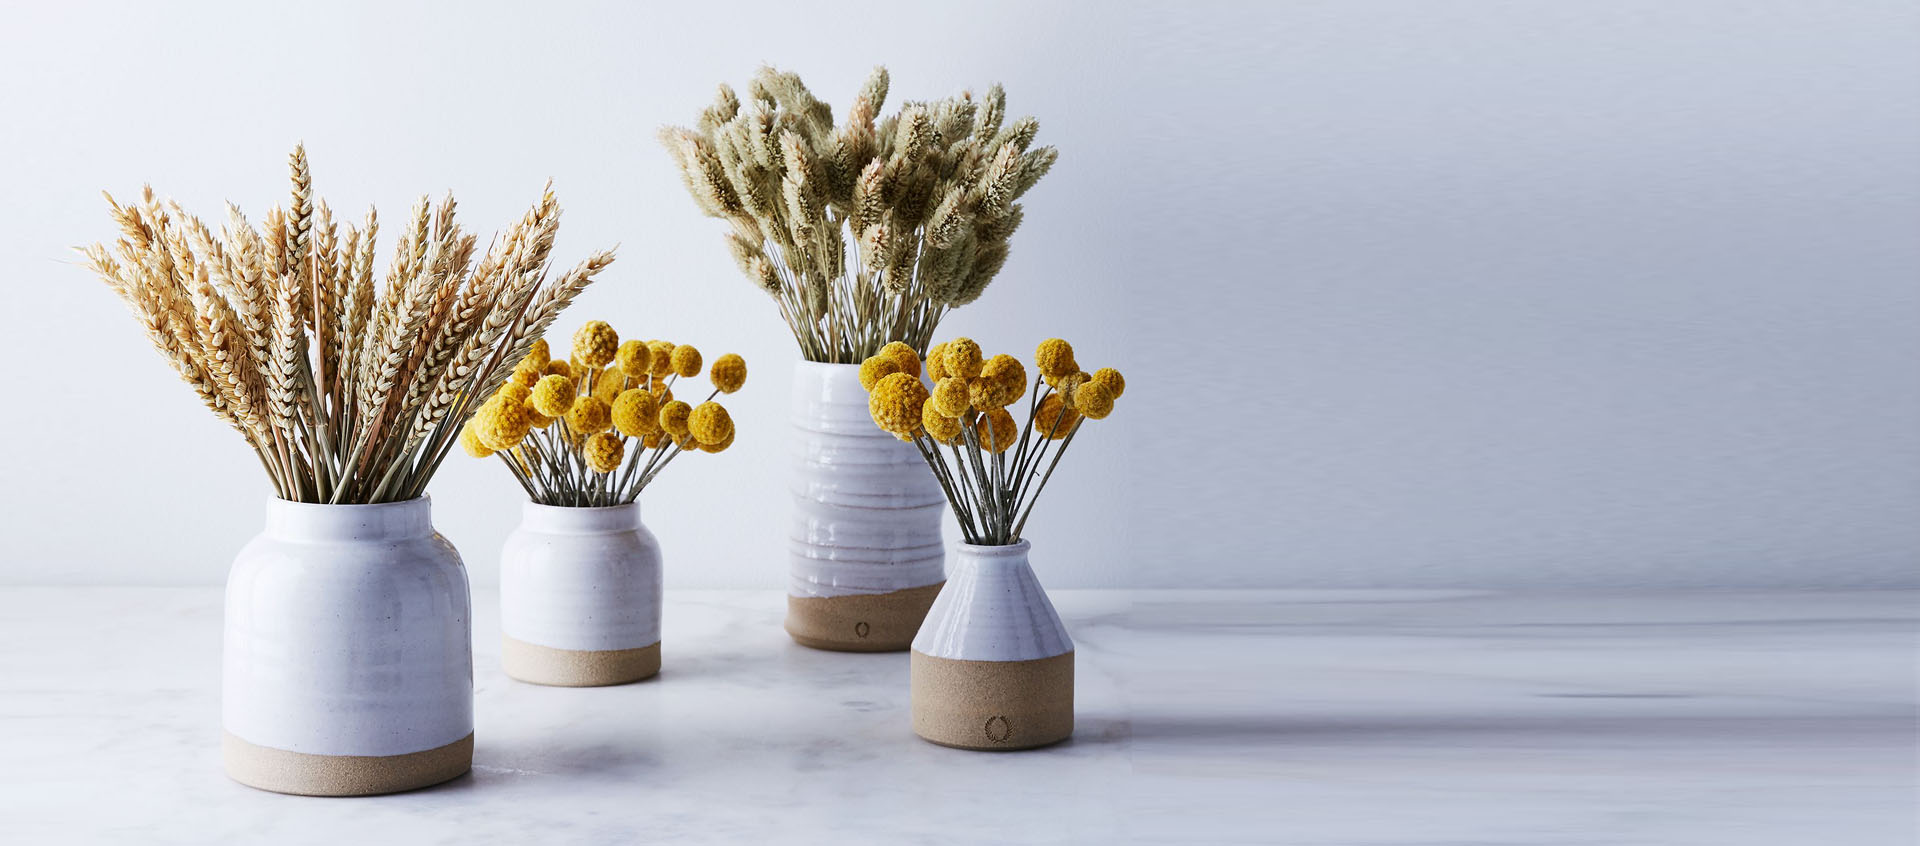 Hoa khô IRIS là một lựa chọn tuyệt vời để tạo ra một điểm nhấn đặc biệt cho ngôi nhà của bạn. Với sự kết hợp giữa màu tím và vàng, những bông hoa này sẽ mang lại cho bạn một không gian nghỉ ngơi thoải mái và thư giãn.